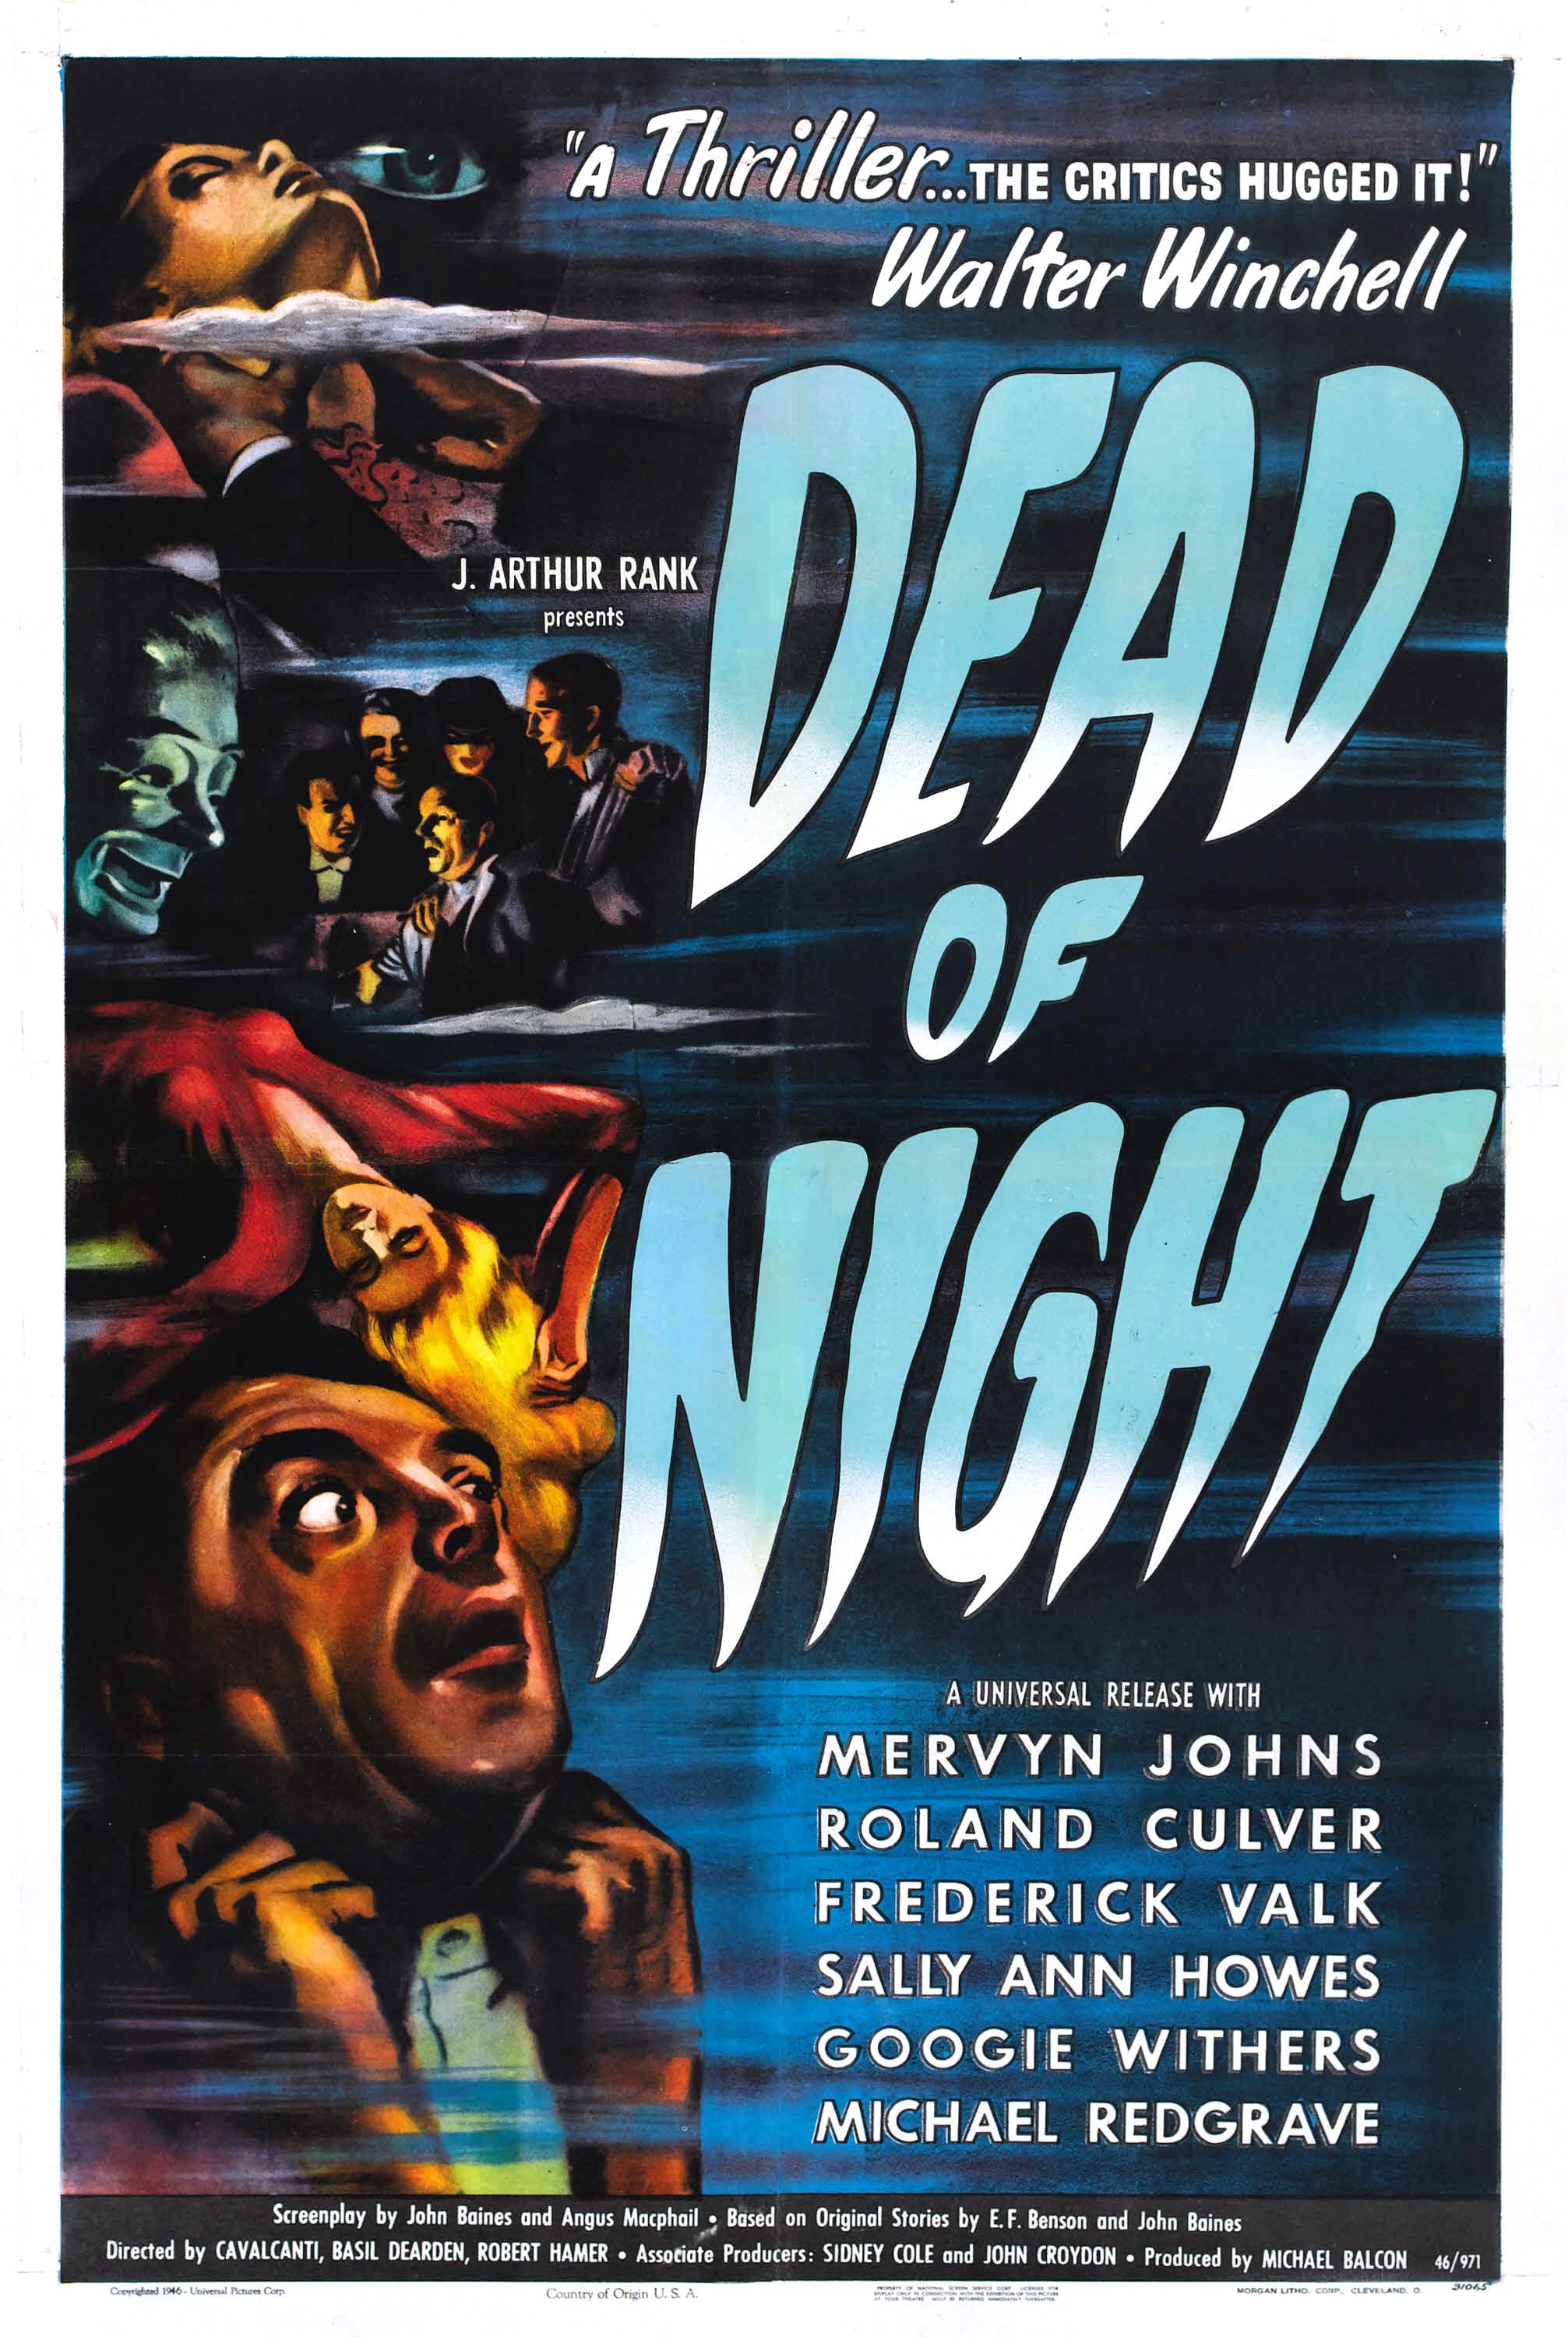 Nonton film Dead of Night layarkaca21 indoxx1 ganool online streaming terbaru